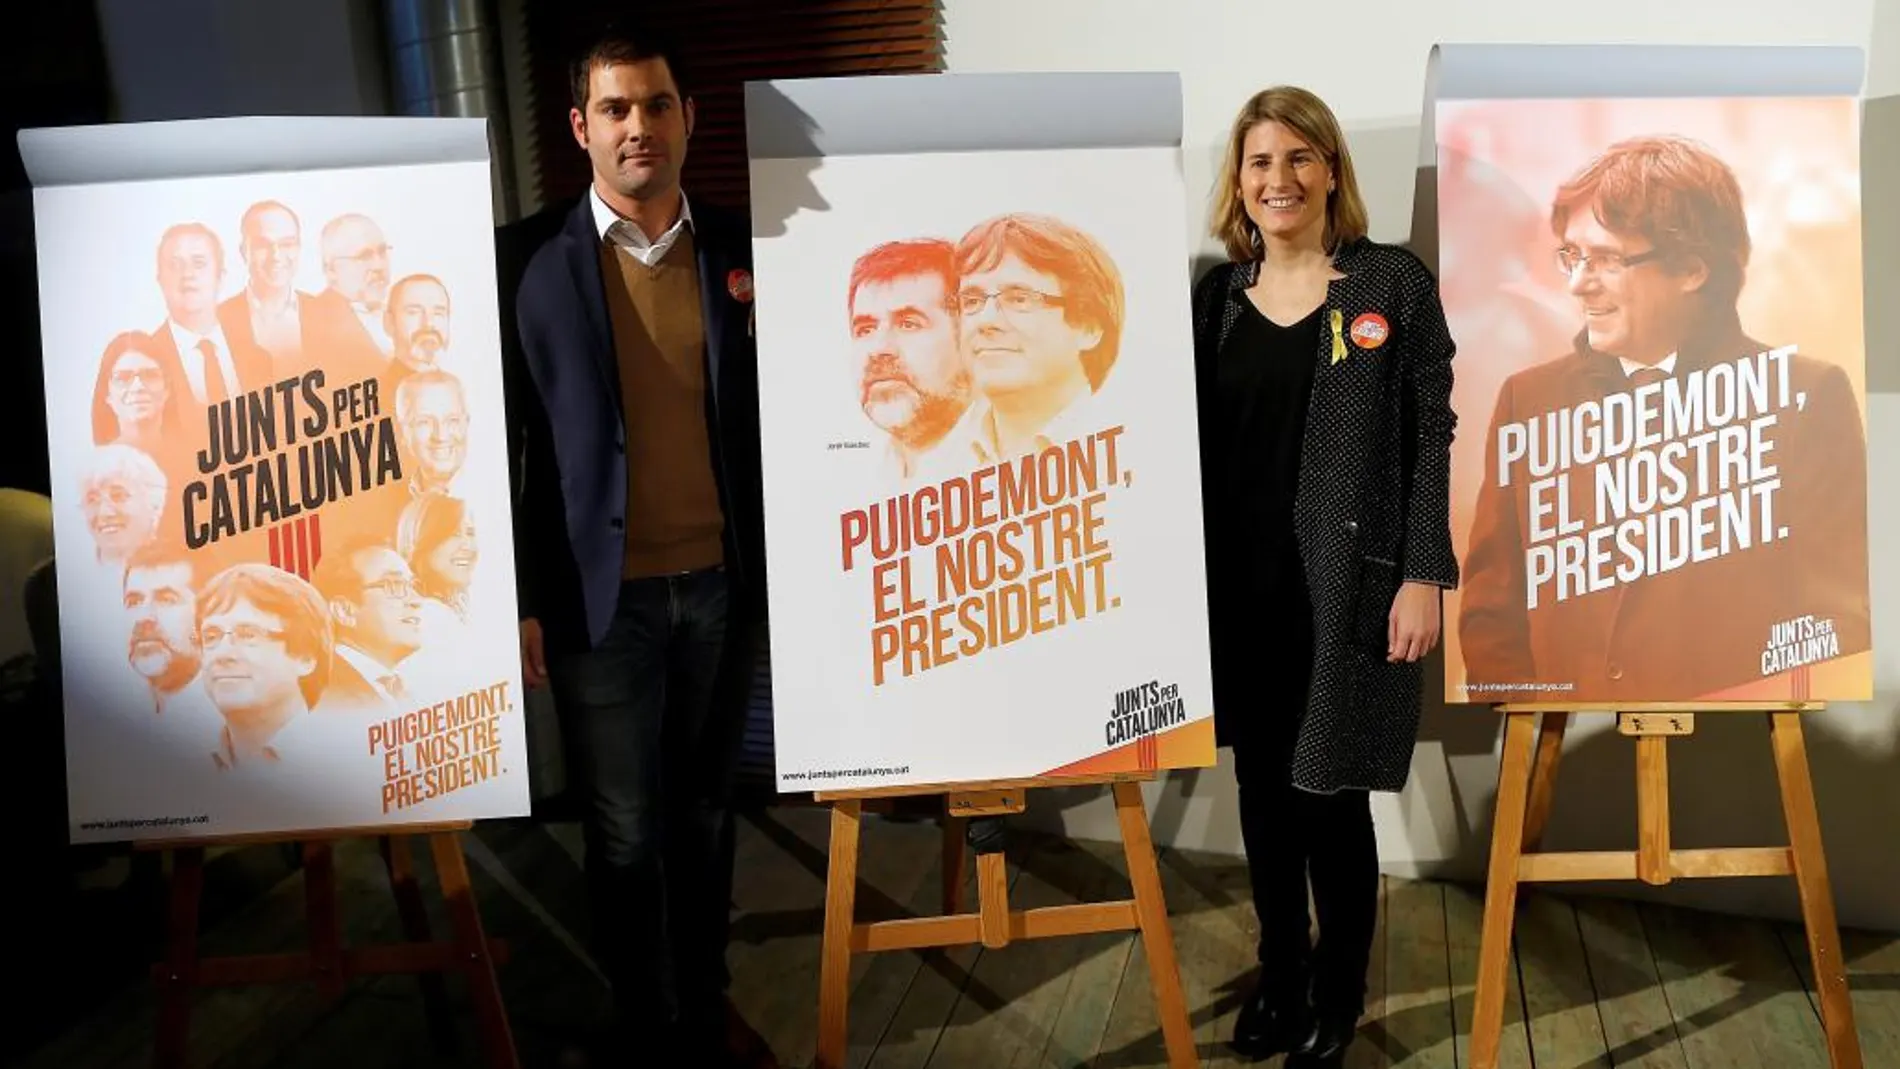 La directora de campaña de Junts per Catalunya, Elsa Artadi, y el responsable de imagen y creatividad de la misma, Ramon Maria Piqué, han presentado la imagen y el lema de la candidatura de cara a las elecciones del 21D.